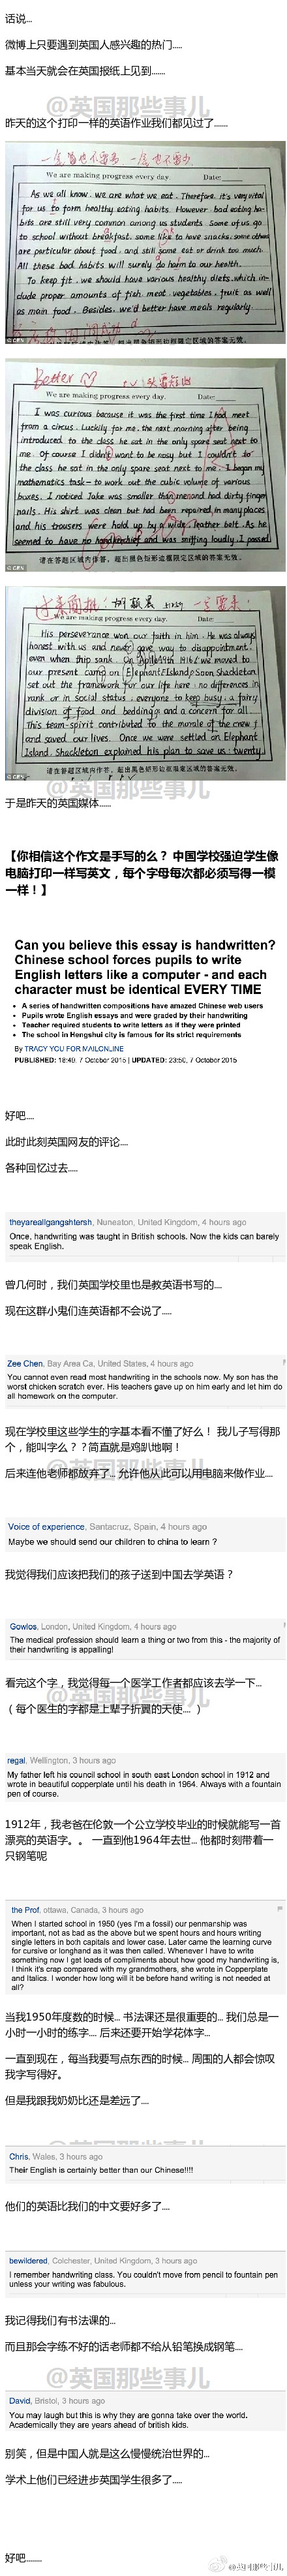 衡水中学手写英语作文传到英国后 英国人表示服了 真情中国